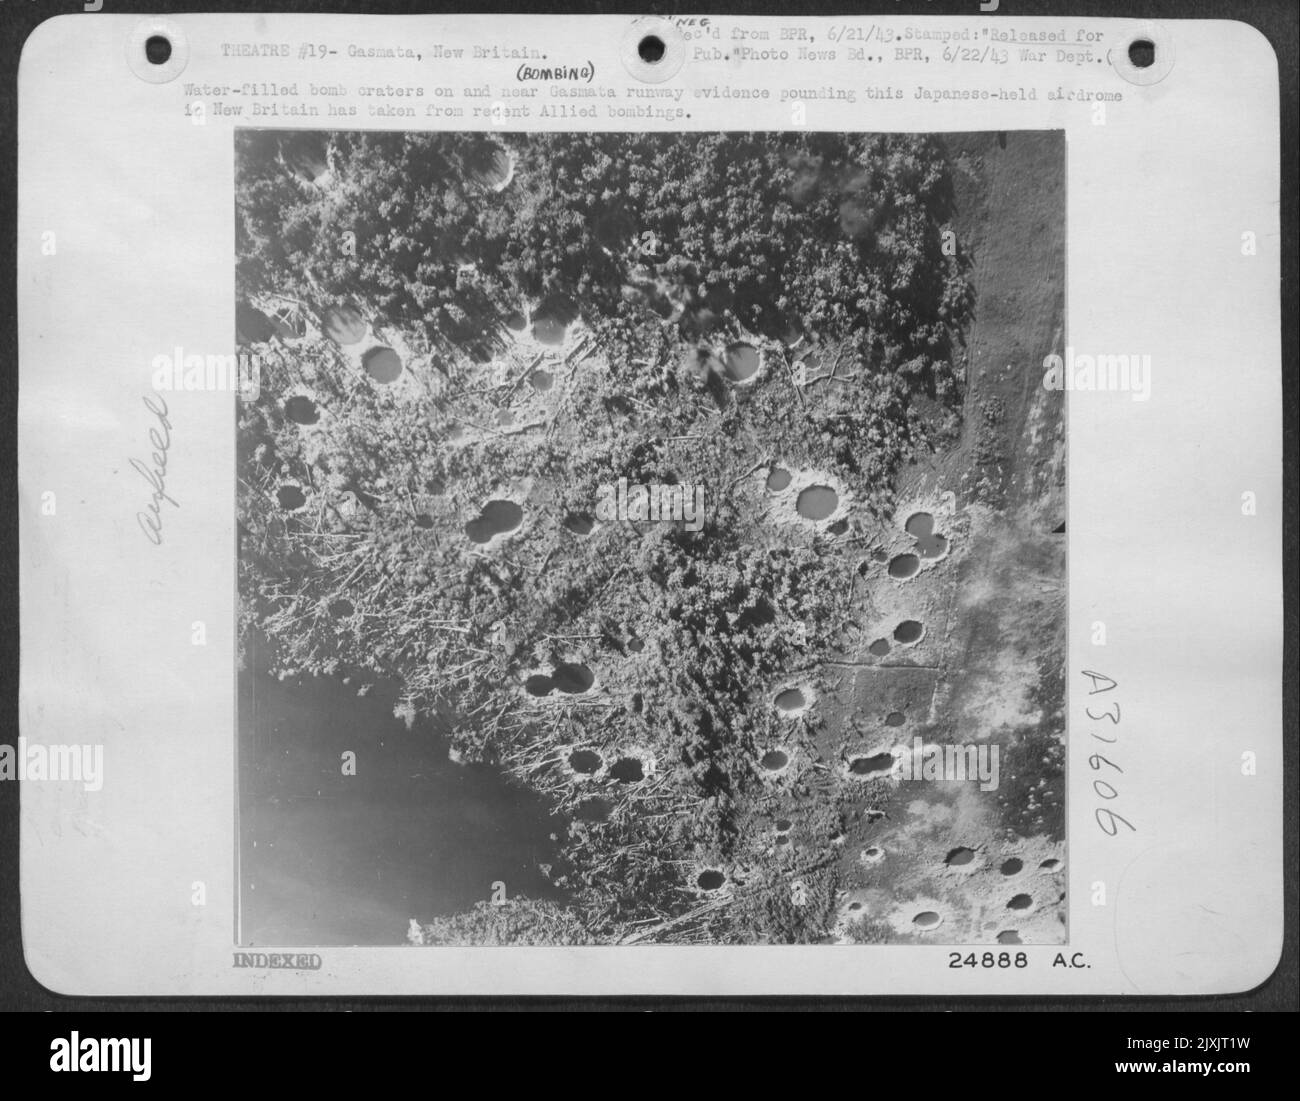 Crateri di bombe pieni d'acqua su e vicino alla pista di Gasmata prove che hanno colpito questo airdrome giapponese in Nuova Gran Bretagna hanno preso dai recenti bombardamenti alleati. Foto Stock